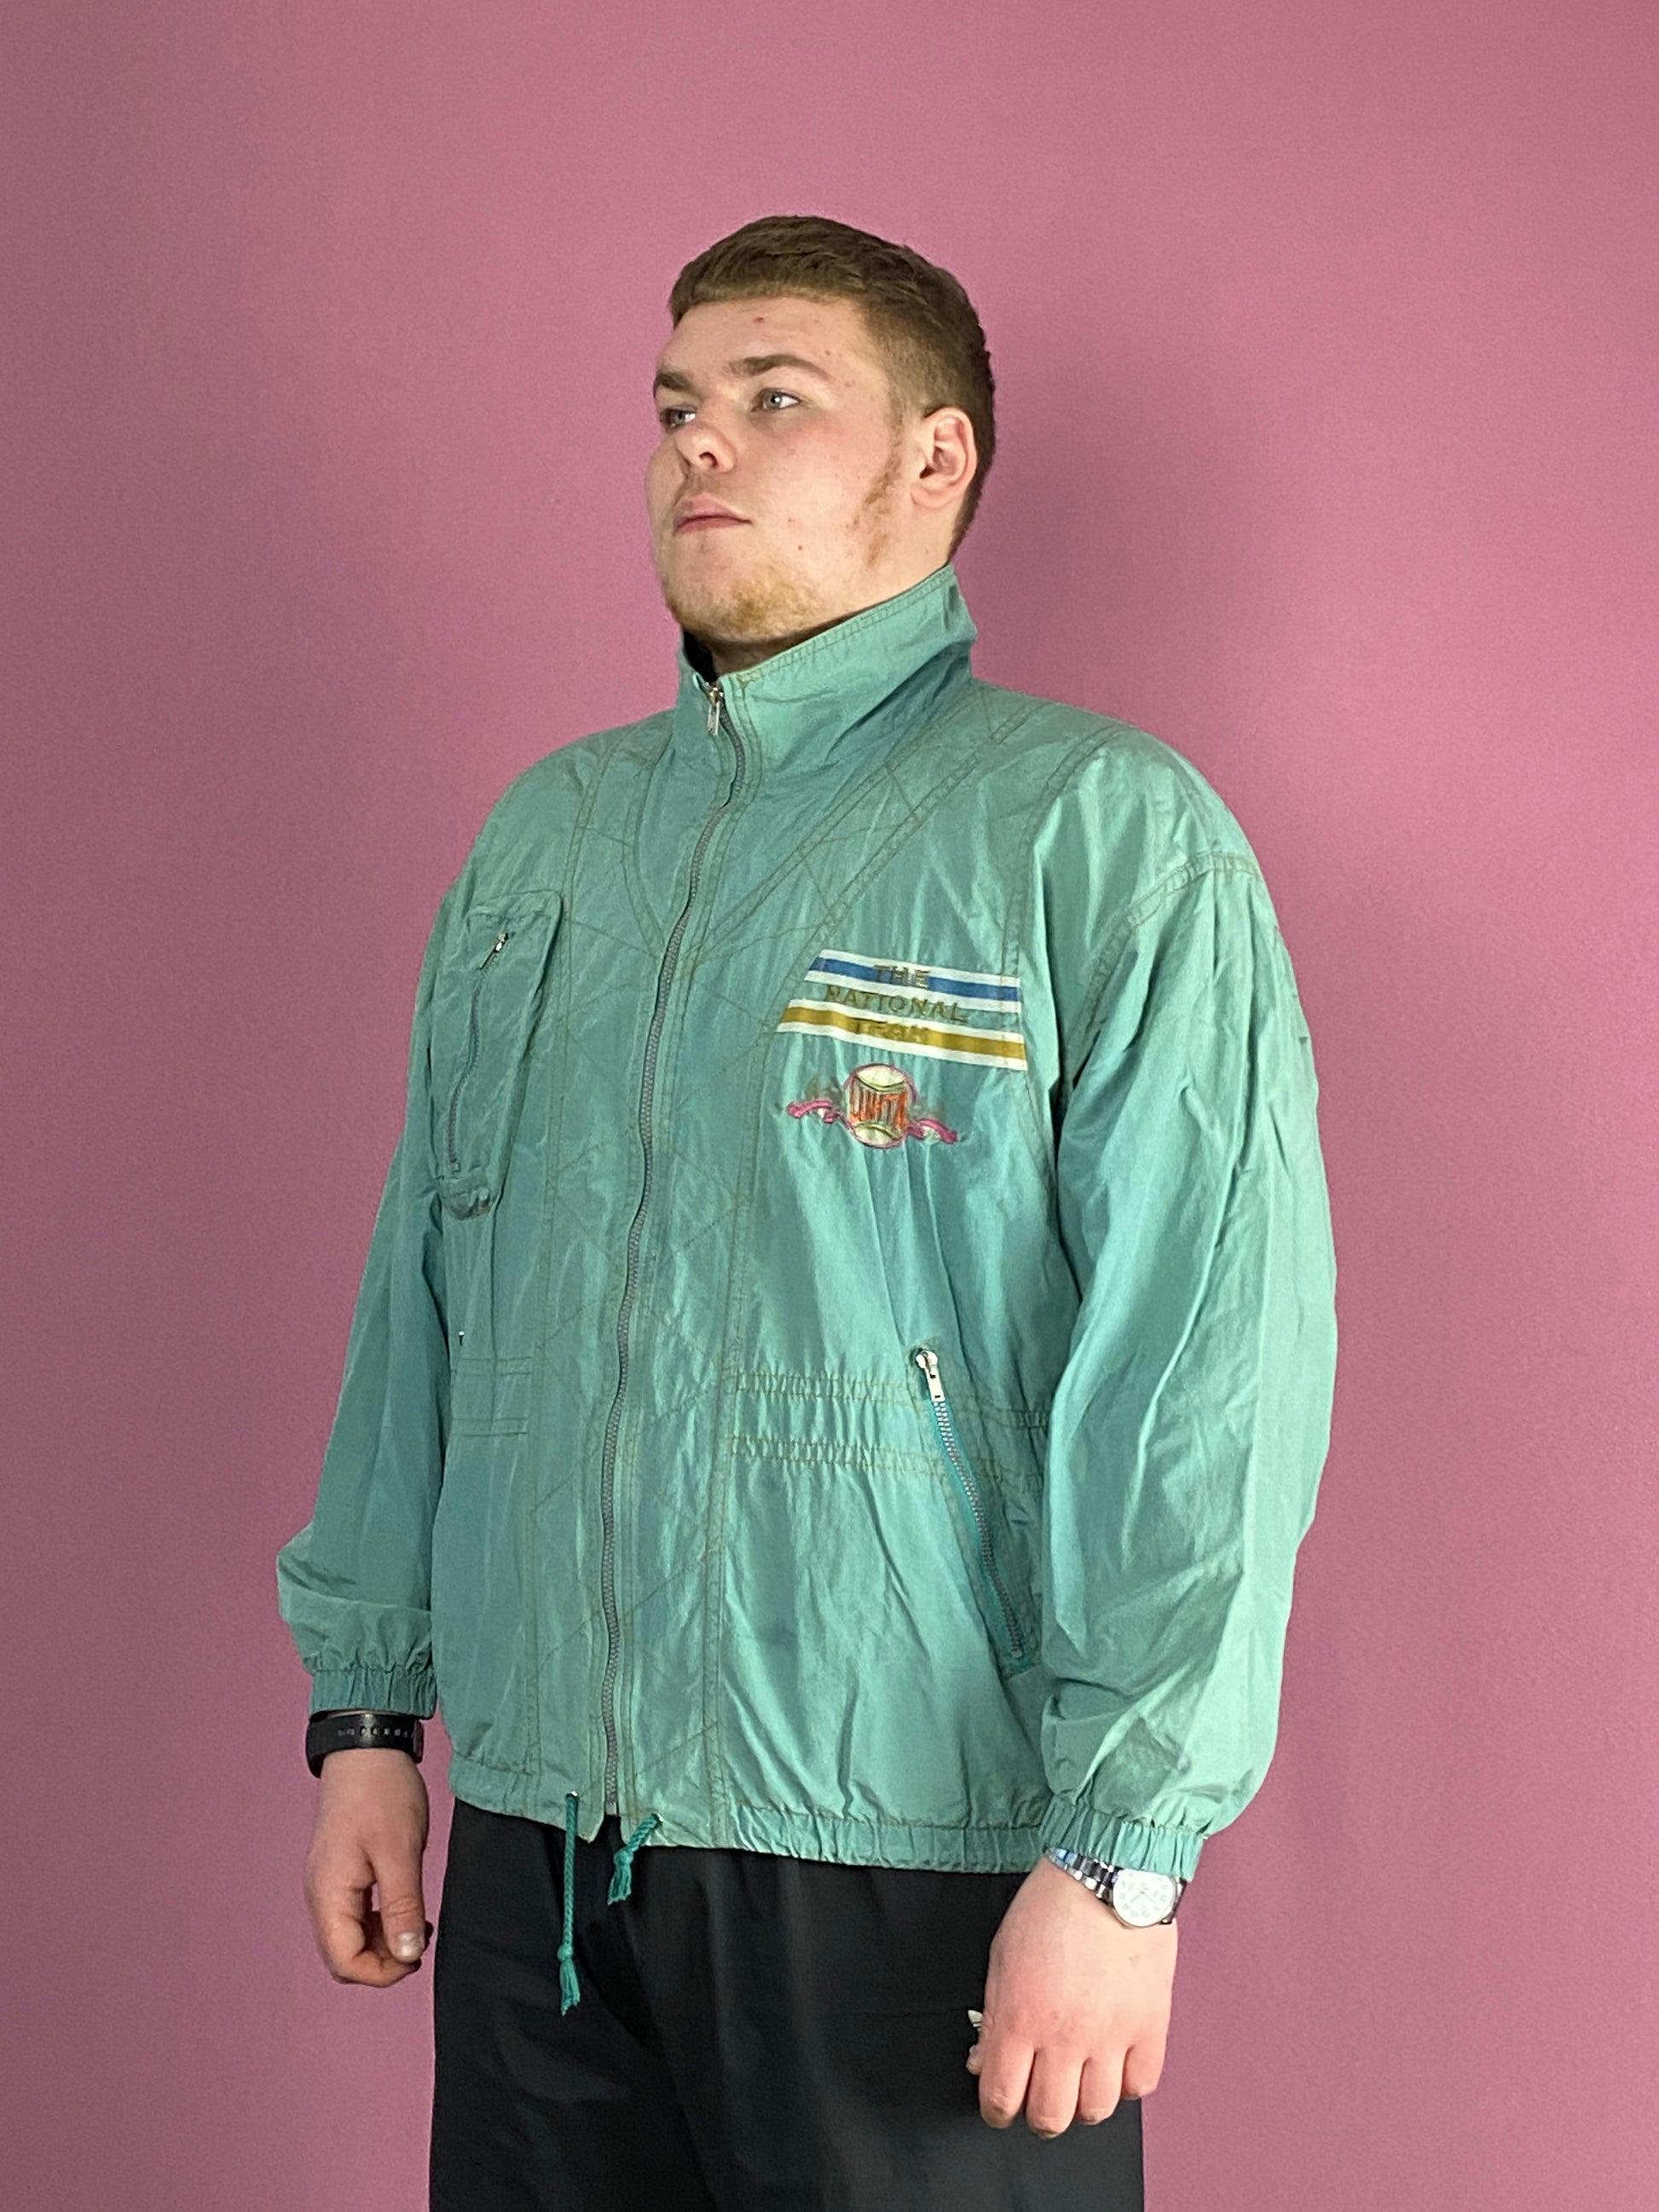 90s Vintage Men's Windbreaker Jacket - XL Green Cotton Blend